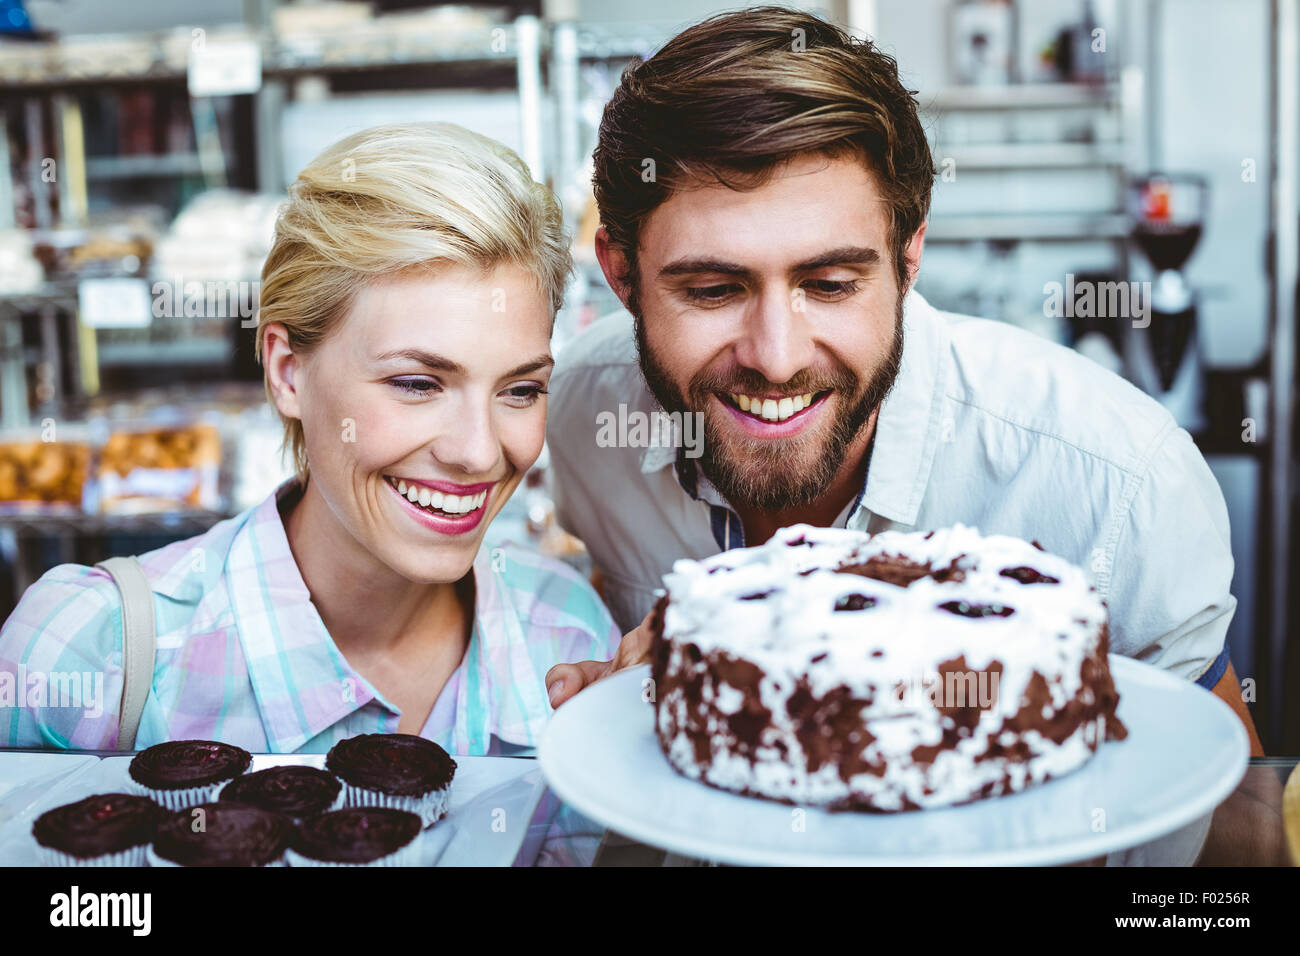 Cute couple sur une date à la recherche à un gâteau au chocolat Banque D'Images